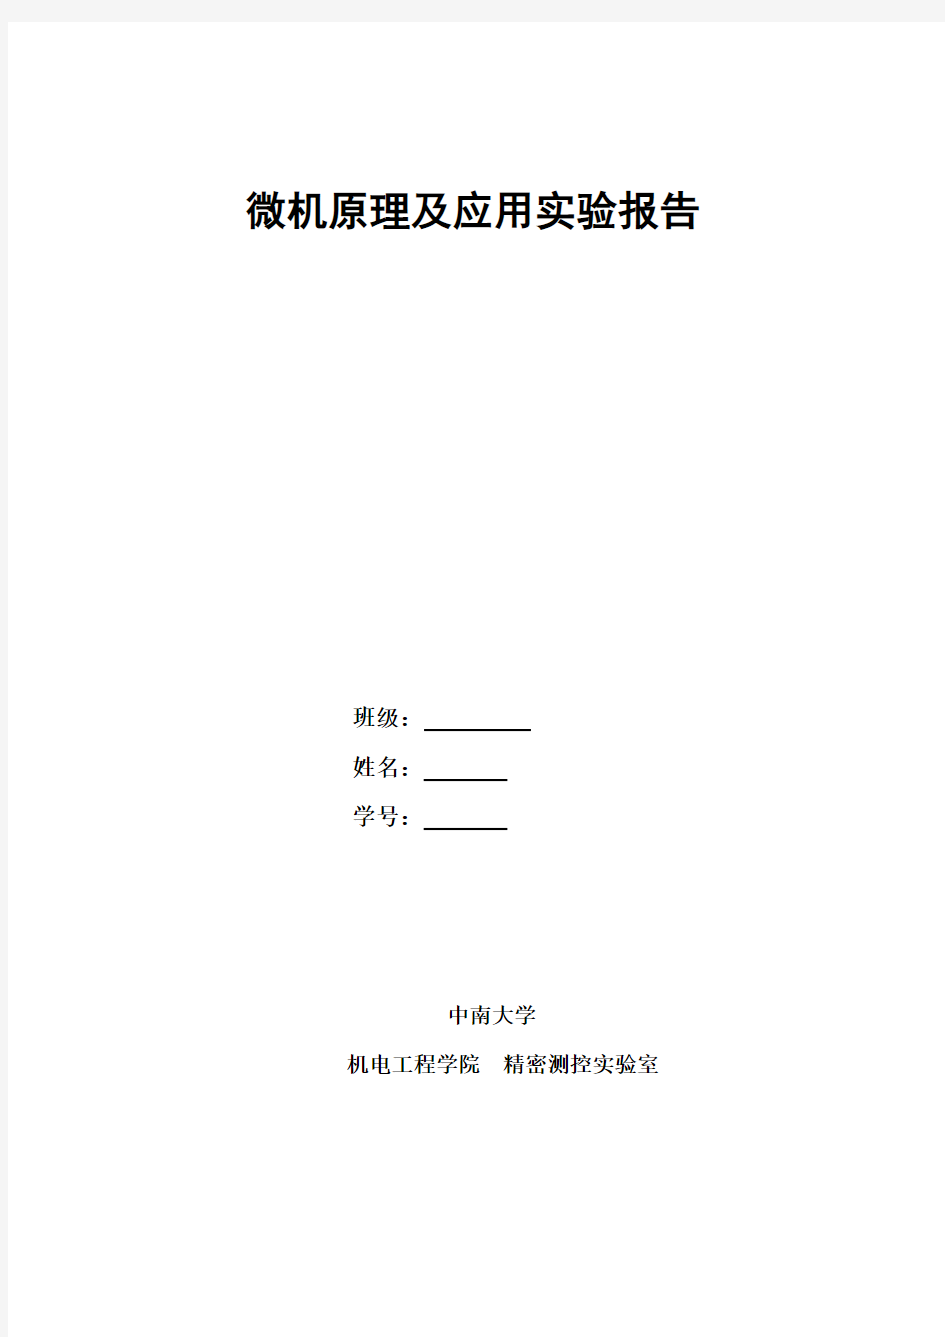 微机原理及应用实验报告材料(中南大学2014年)